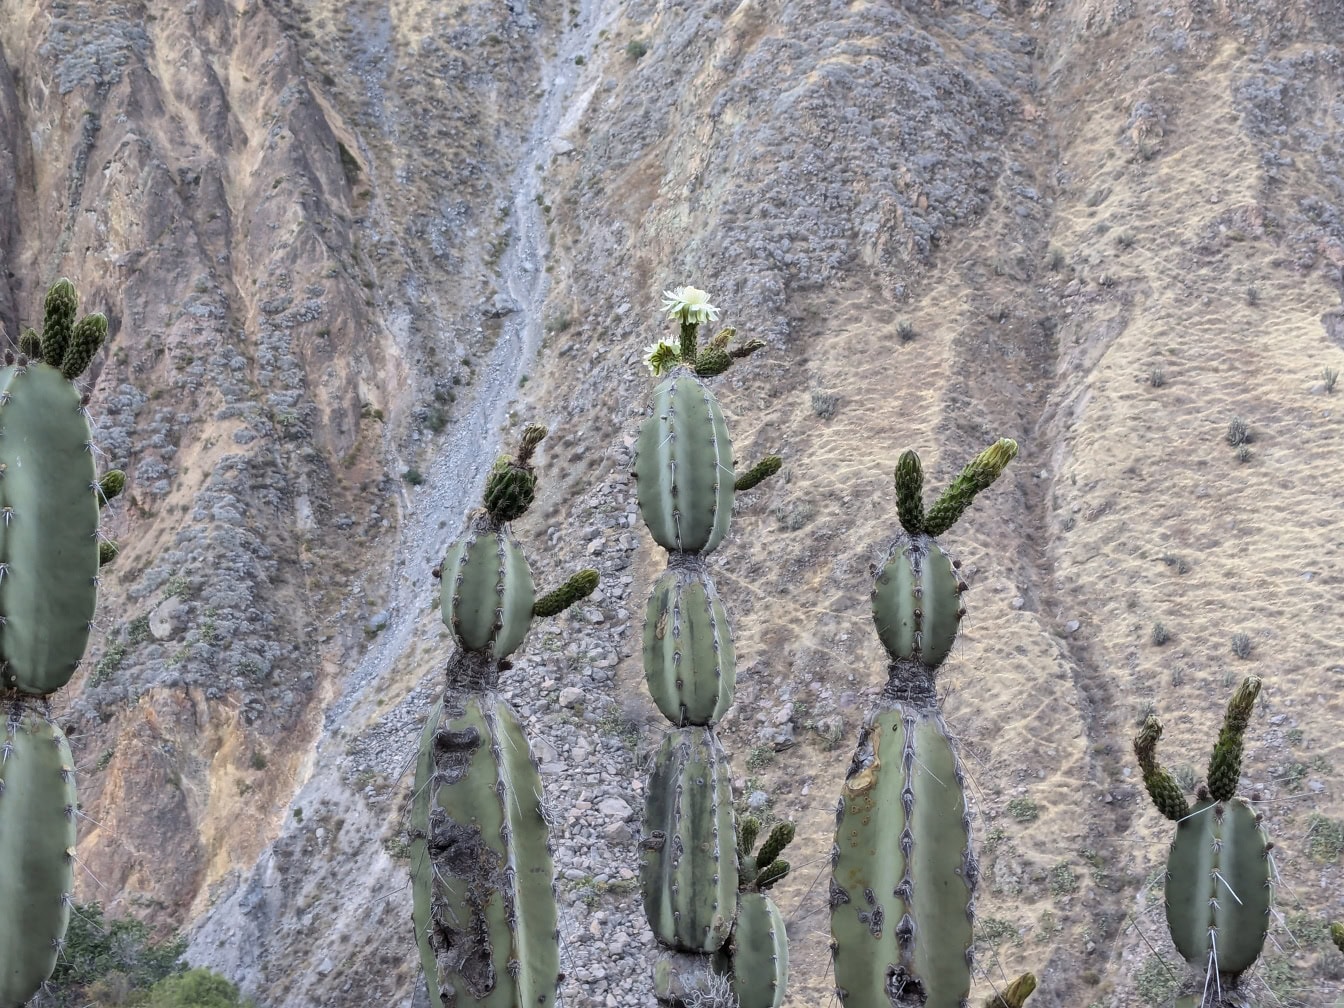 En kaktus med en hvit blomst, en urt kalt mandacaru eller cardeiro (Cereus jamacaru)